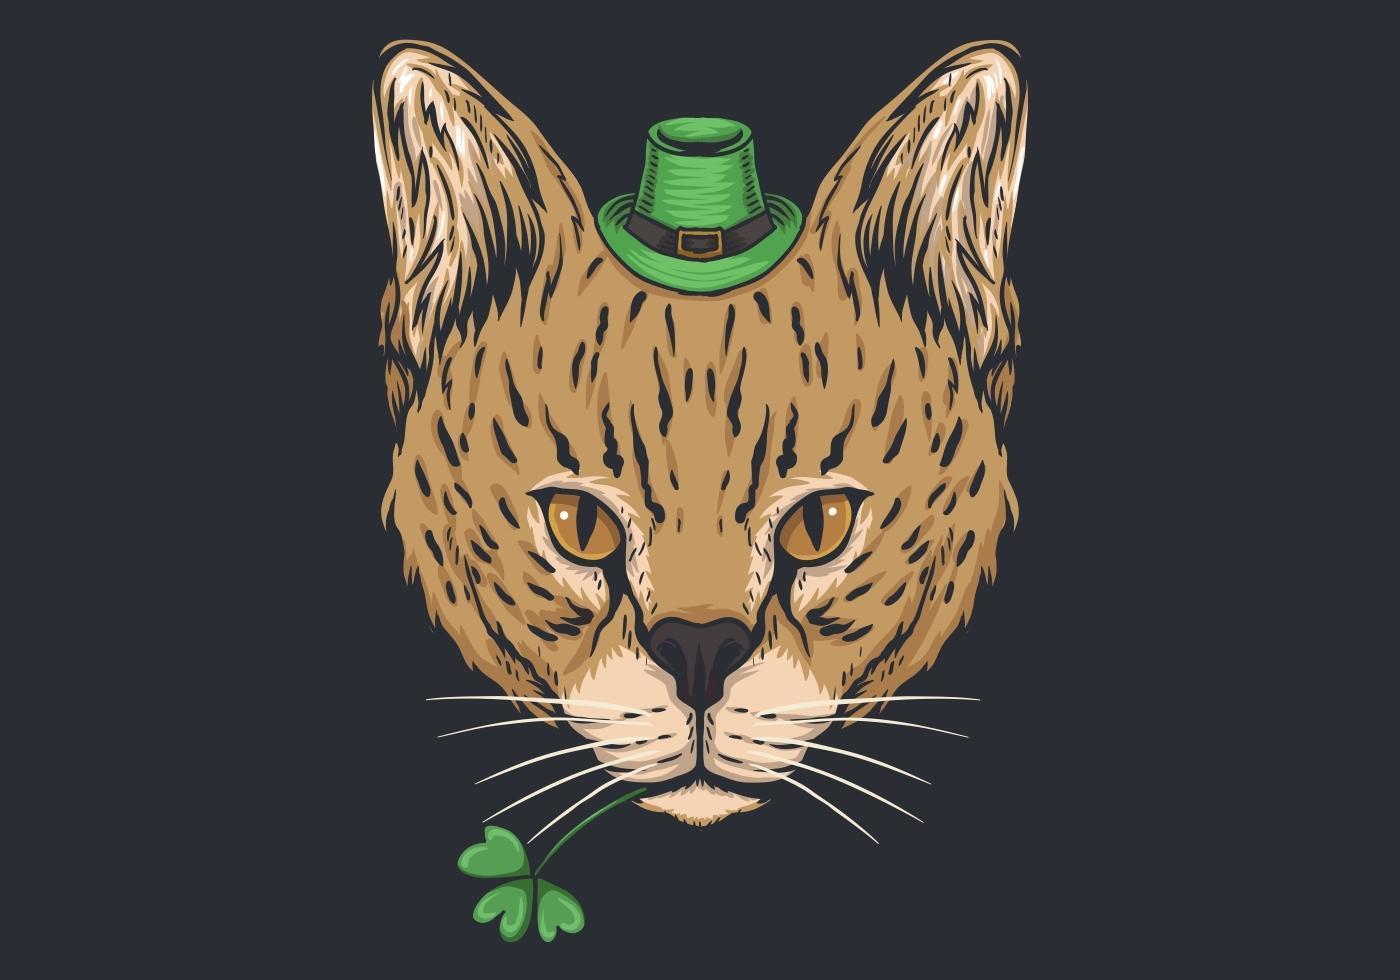 Wilde kat St. Patrick&#39;s dagontwerp vector